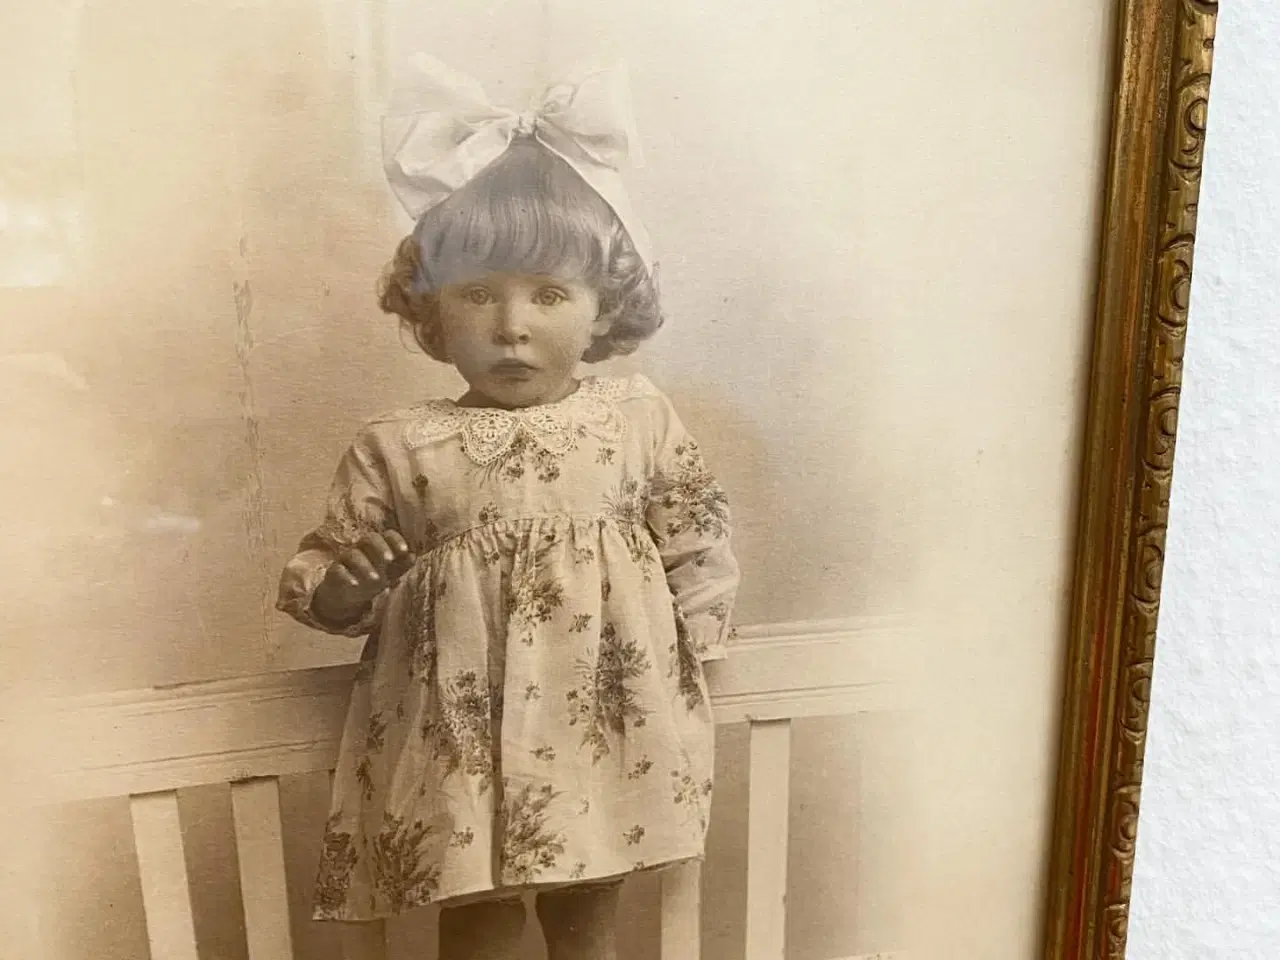 Billede 4 - Sort/hvid foto af lille pige i guldramme, dat. 1928